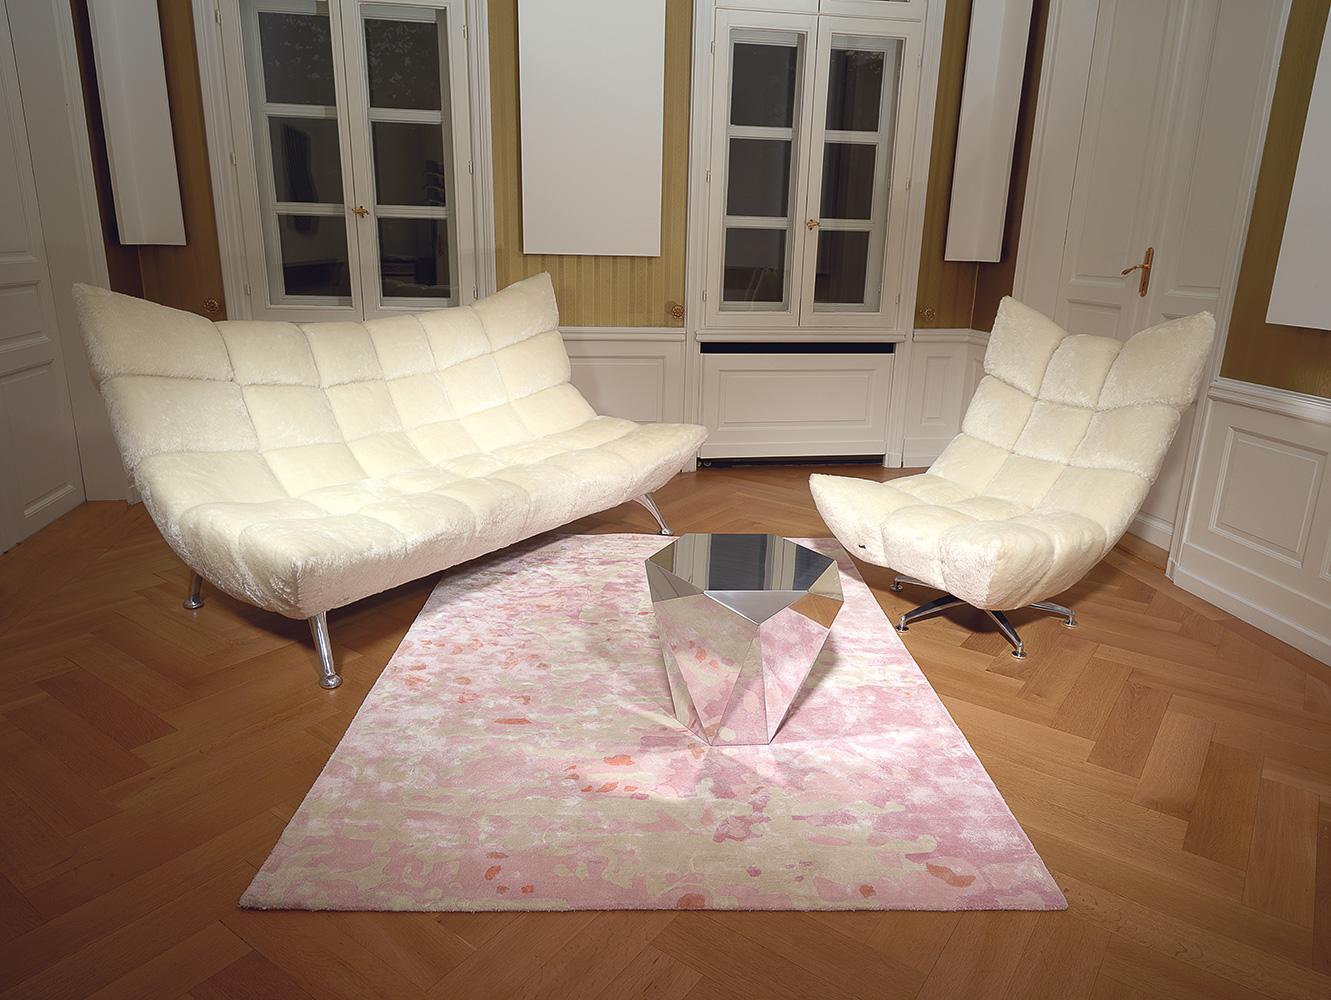 Helle Mohair Sitzgruppe mit Teppich in Pastelltönen #teppich #sessel #pastellfarbe #sofa #glascouchtisch #drehsessel #cremefarben #cremefarbenessofa ©Bretz, Design: Meera Rathai